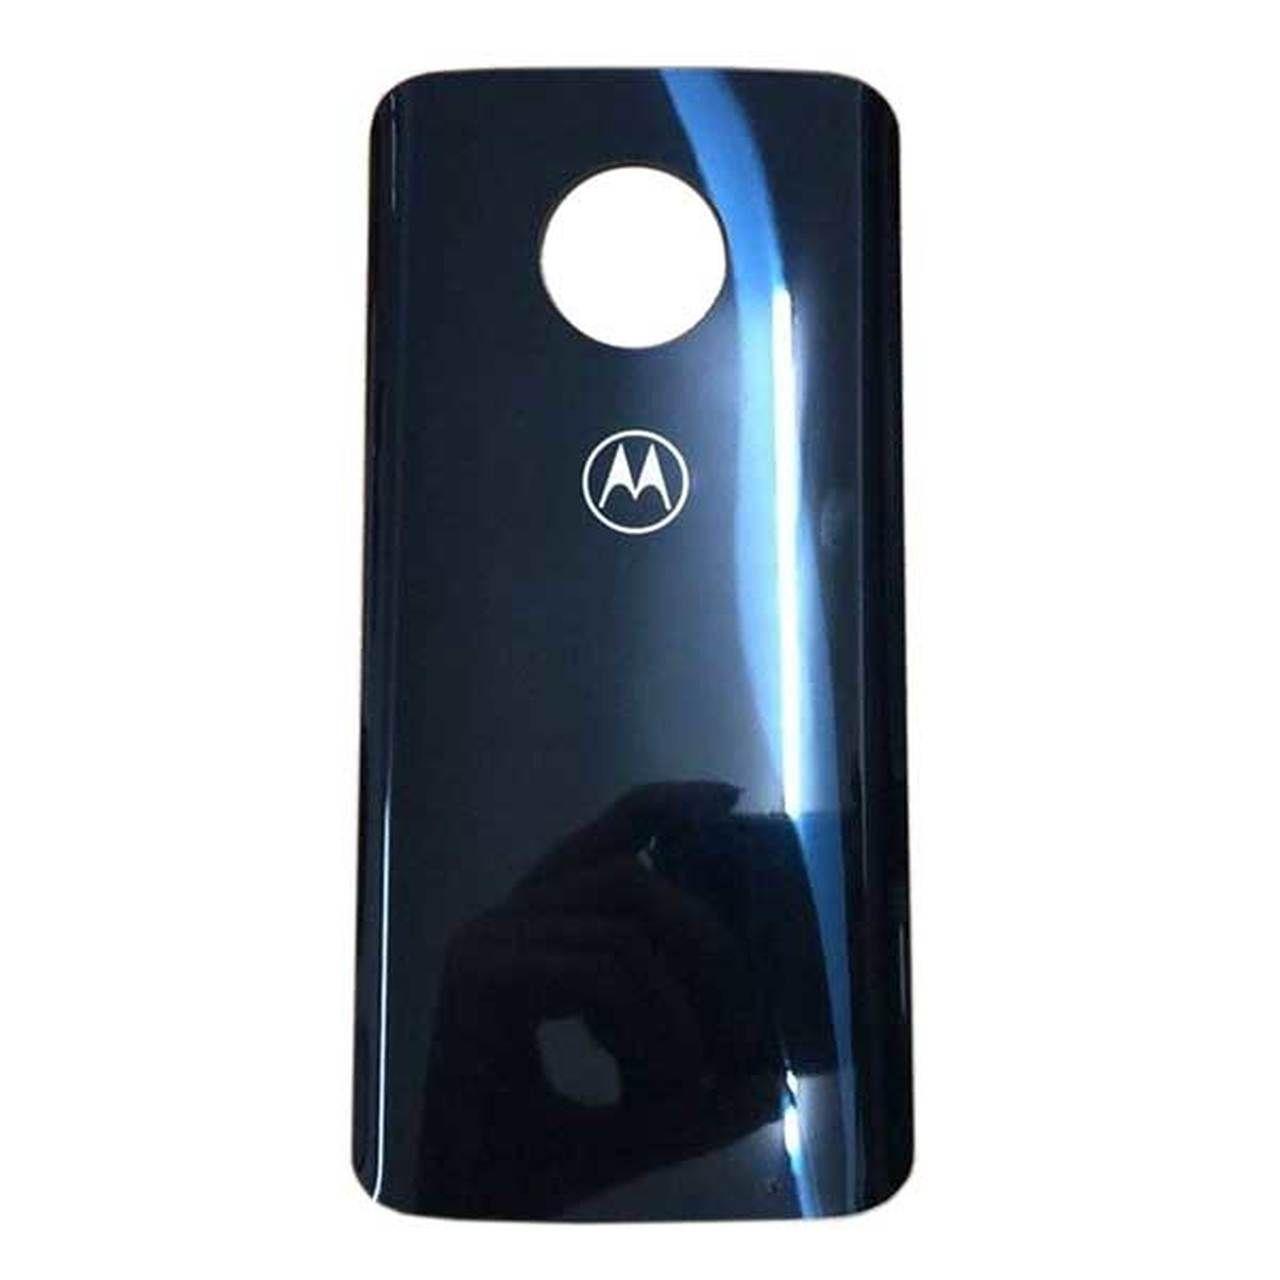 Kryt baterie Motorola Moto g6 plus modrý